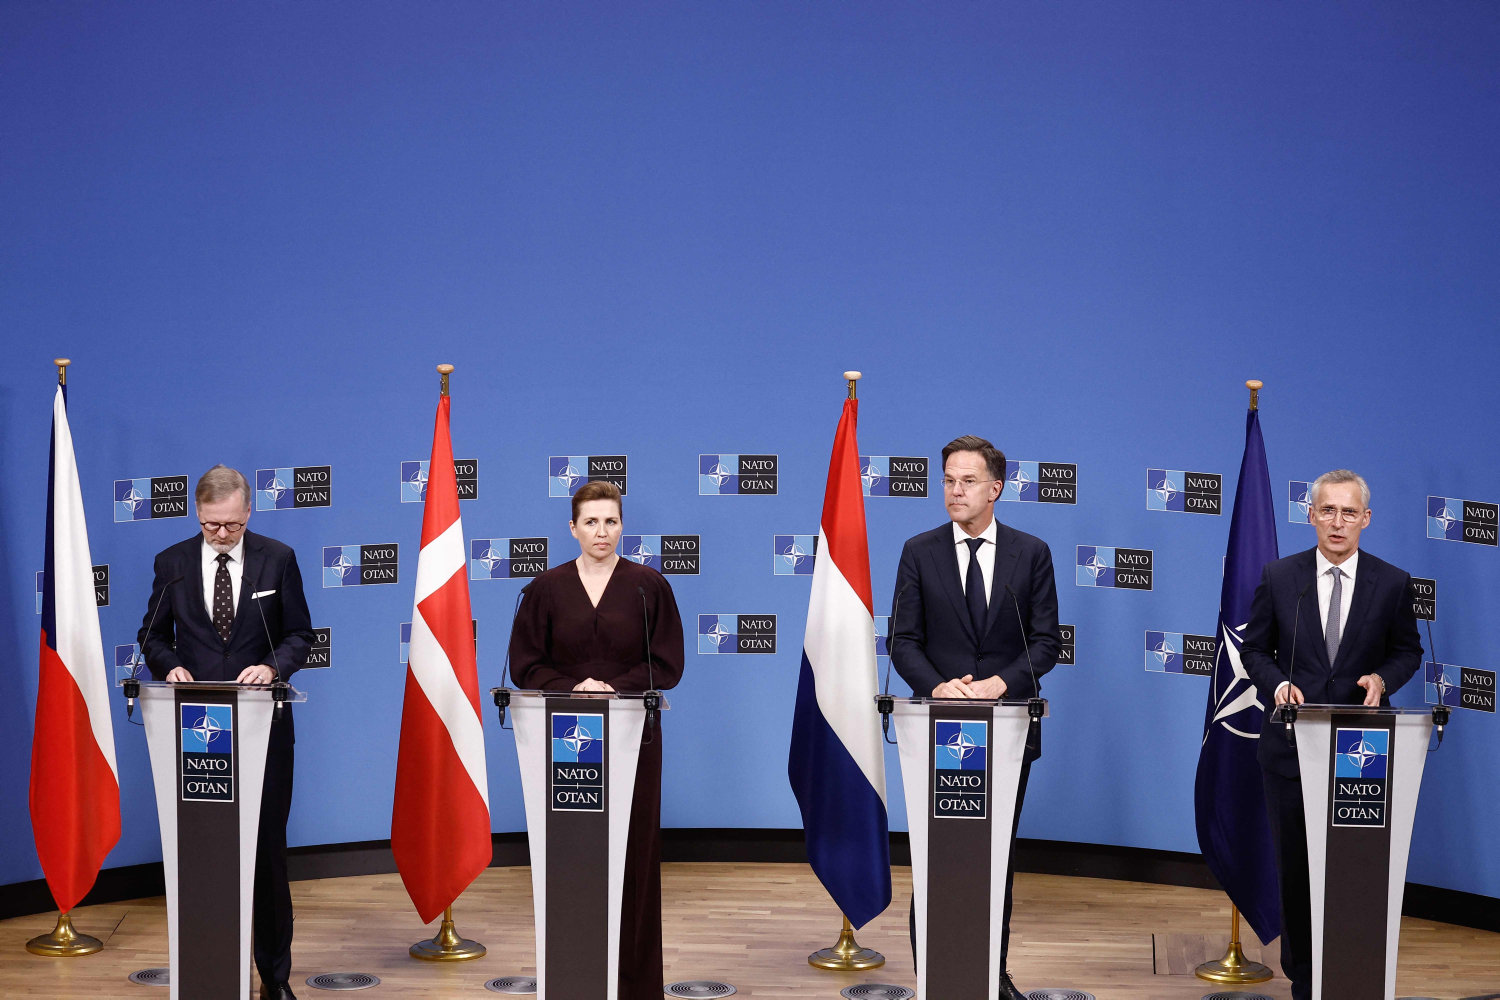 danmark og holland i fælles appel: send luftforsvar til ukraine